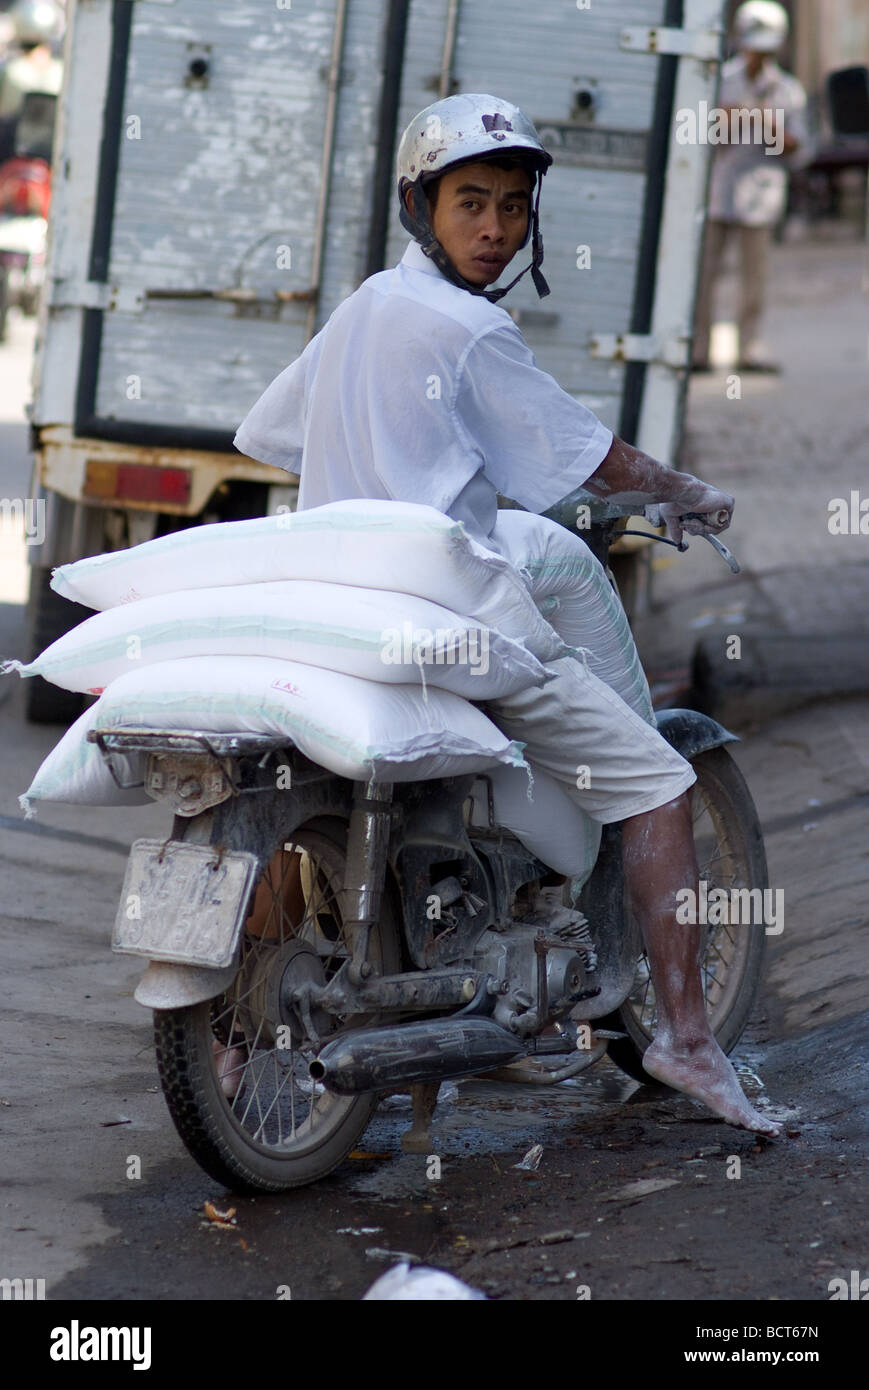 Jeune homme aux pieds nus transportant des sacs de farine sur sa moto dans le quartier chinois de Cho Lon de Ho Chi Minh Ville Vietnam Banque D'Images